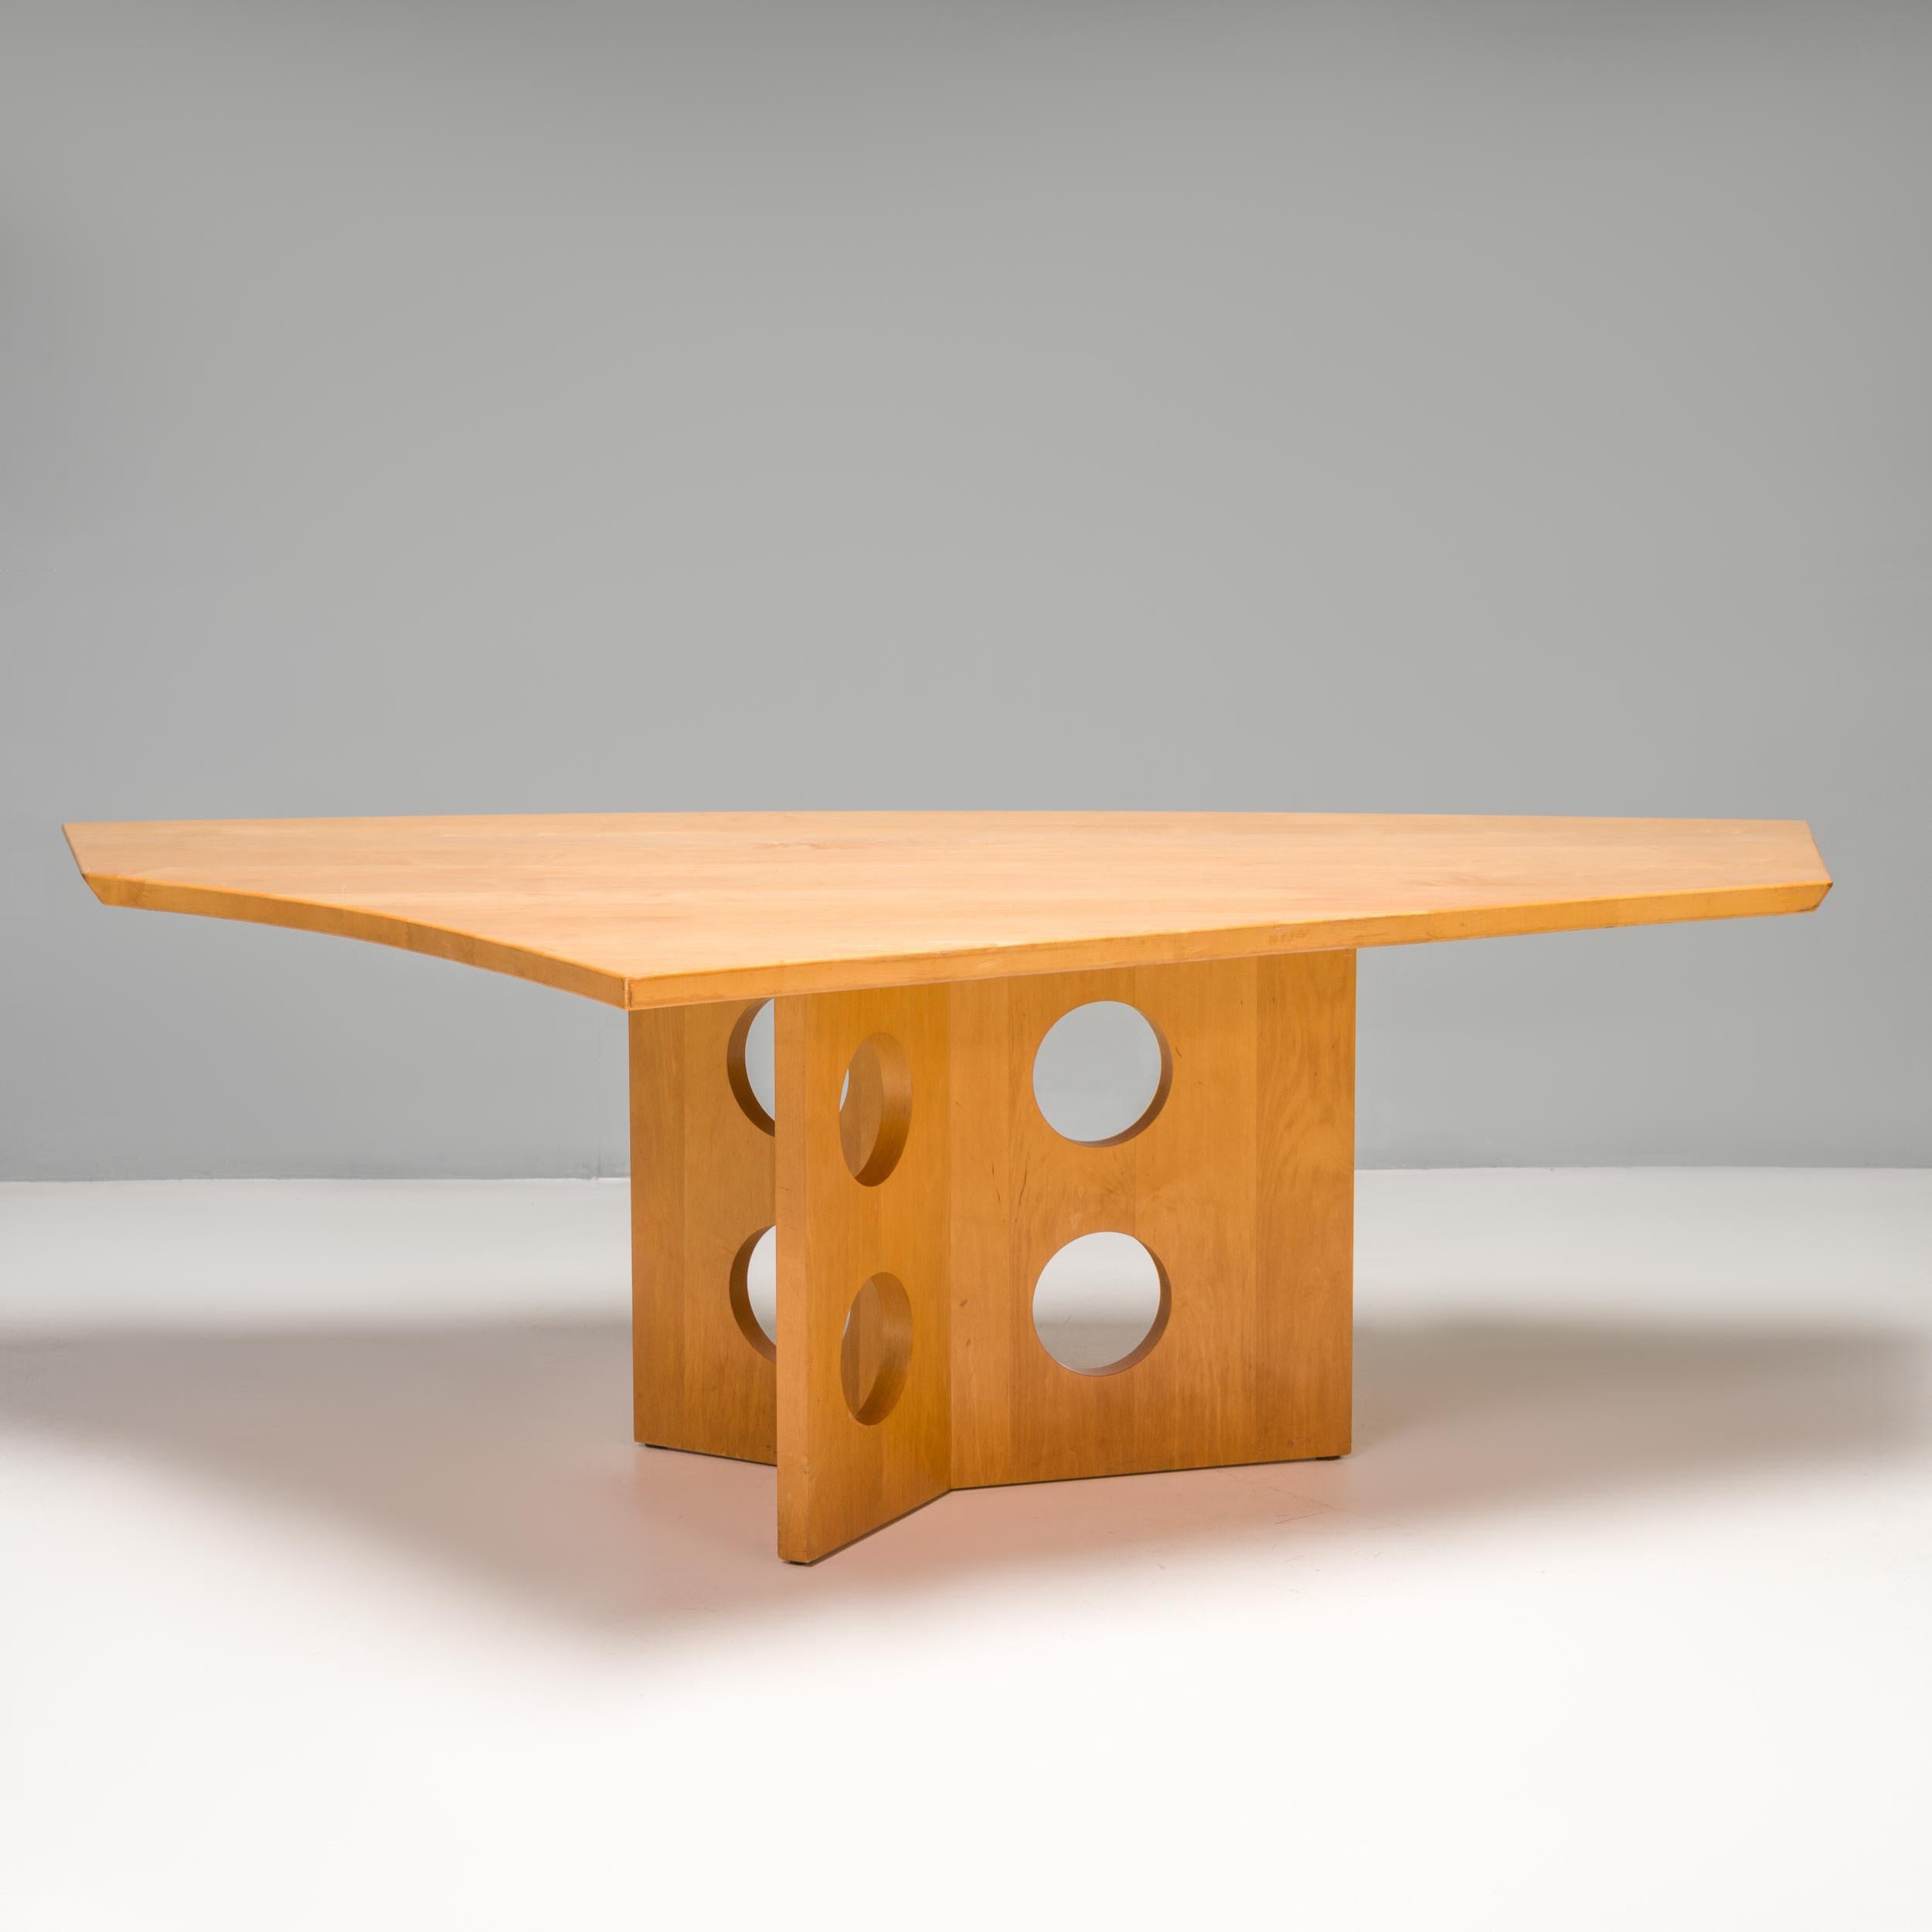 Fruit d'une collaboration, la table de salle à manger M23 a un style très similaire à celui de la table M21, inspirée par Jean Prouvé et fabriquée par Tecta.

Construite en bois massif, la table a une base angulaire formée de trois panneaux de bois,